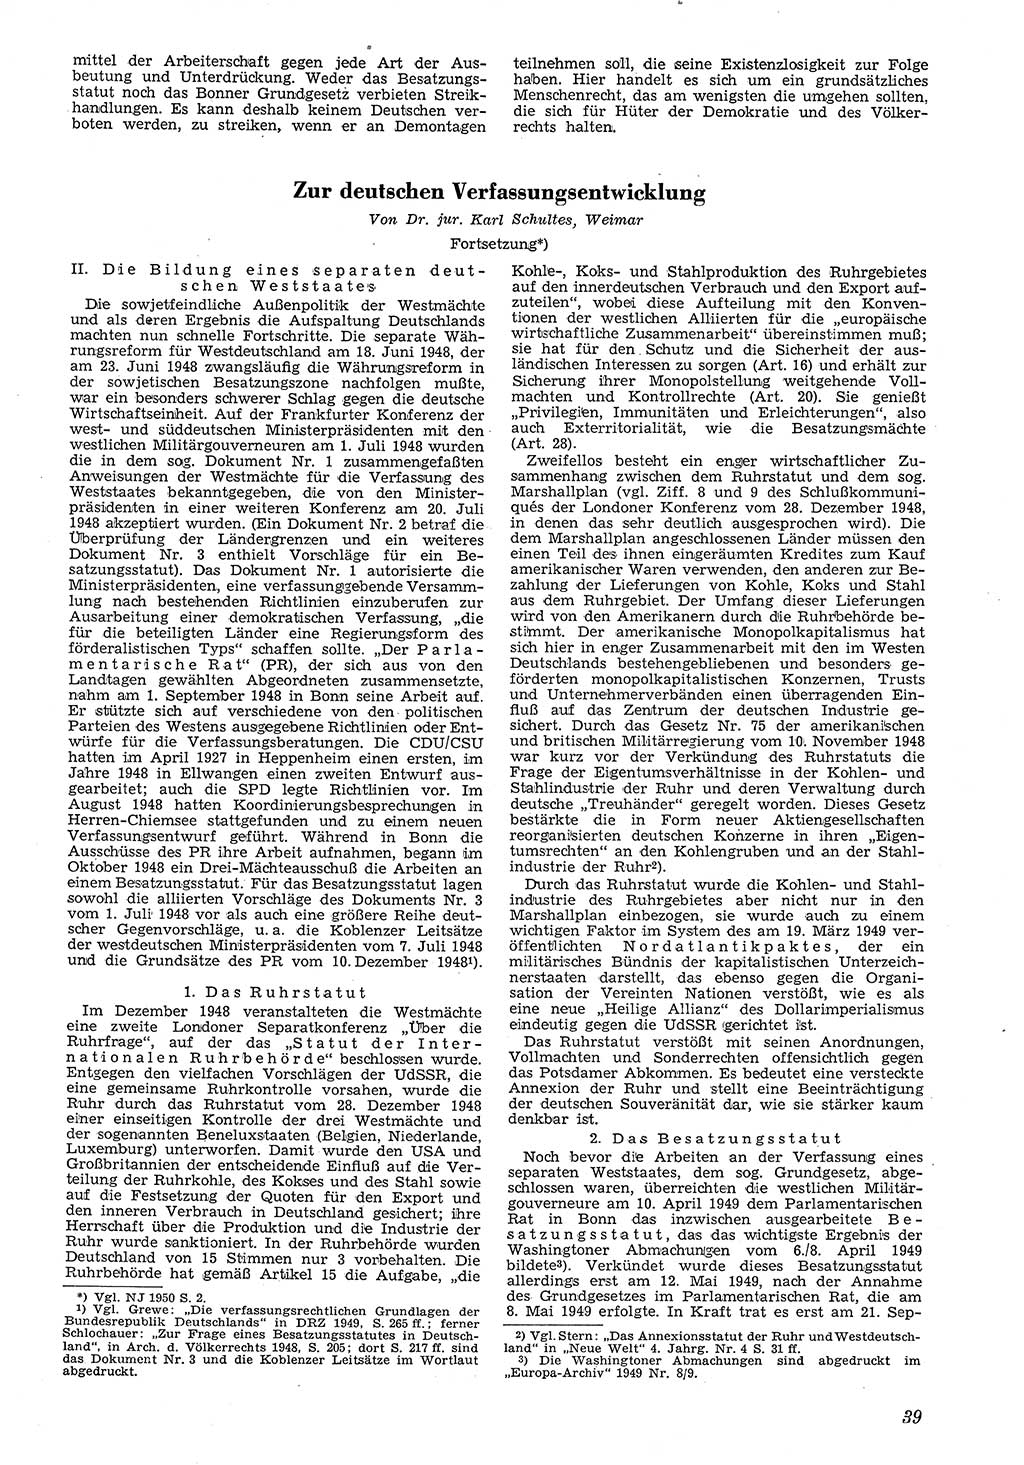 Neue Justiz (NJ), Zeitschrift für Recht und Rechtswissenschaft [Deutsche Demokratische Republik (DDR)], 4. Jahrgang 1950, Seite 39 (NJ DDR 1950, S. 39)